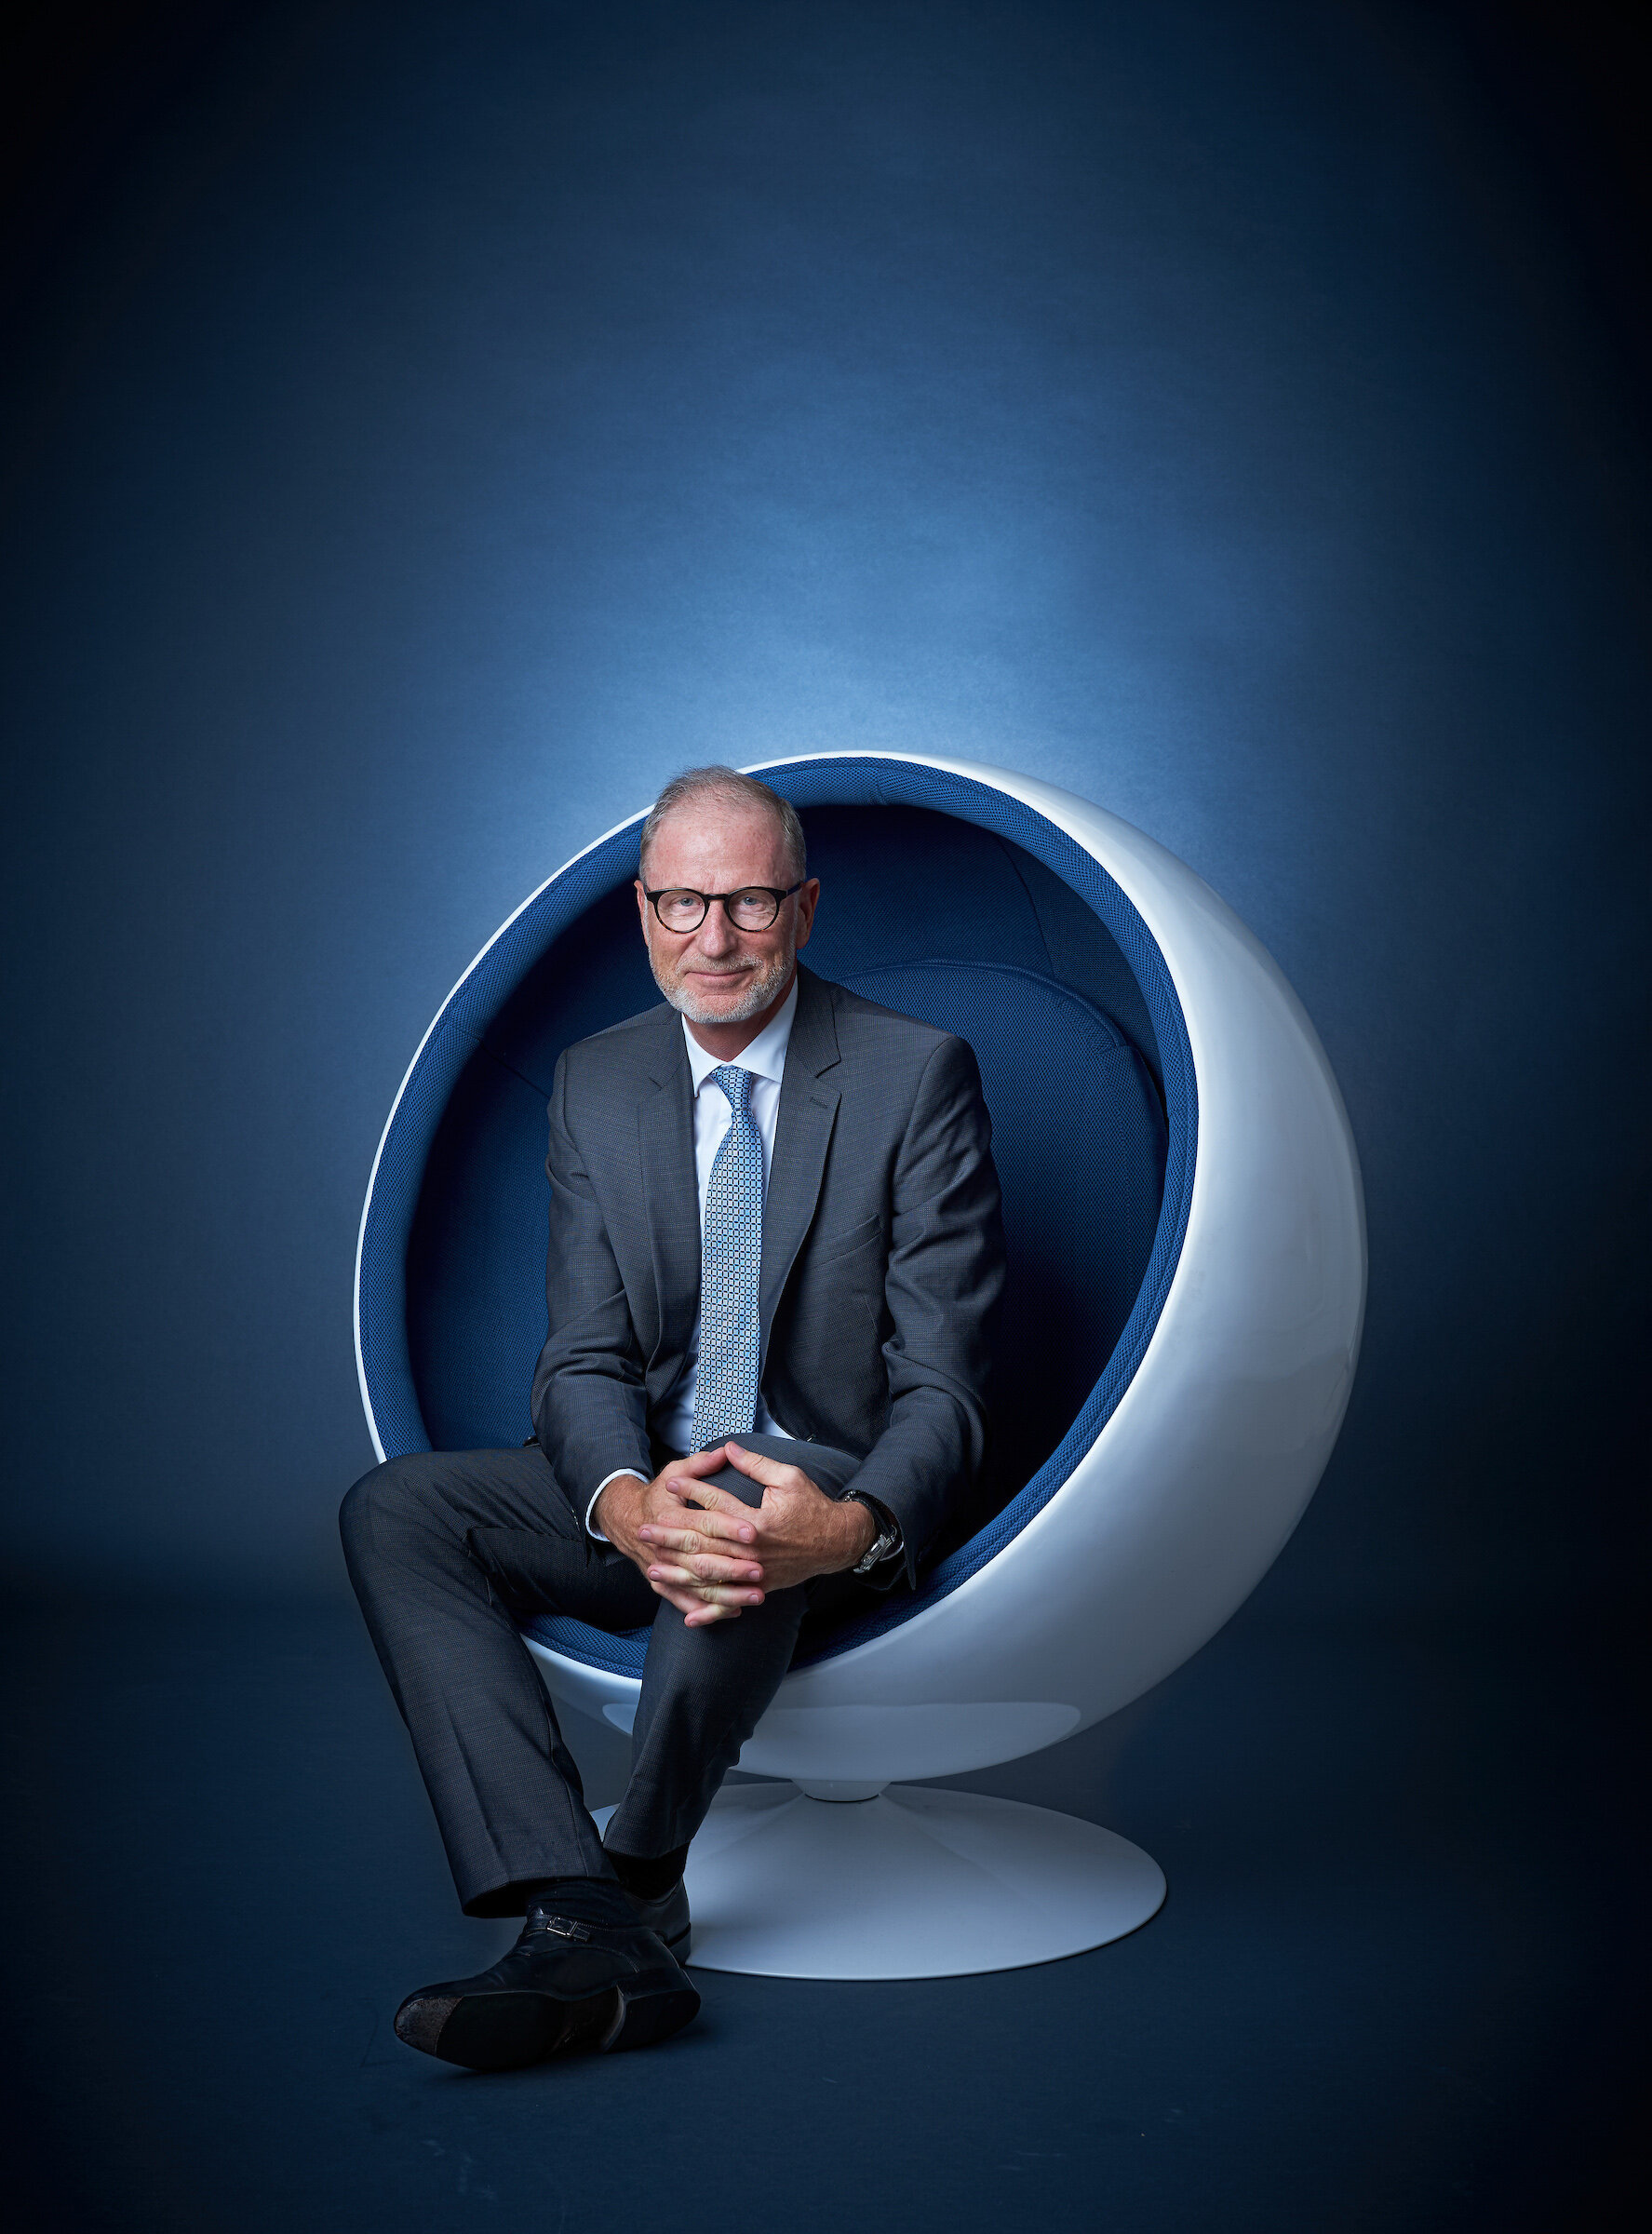 Bernard Hodler, CEO der Bank Juliaus Baer, fotografiert von Jürg Kaufmann für das Sphere Magazine. 